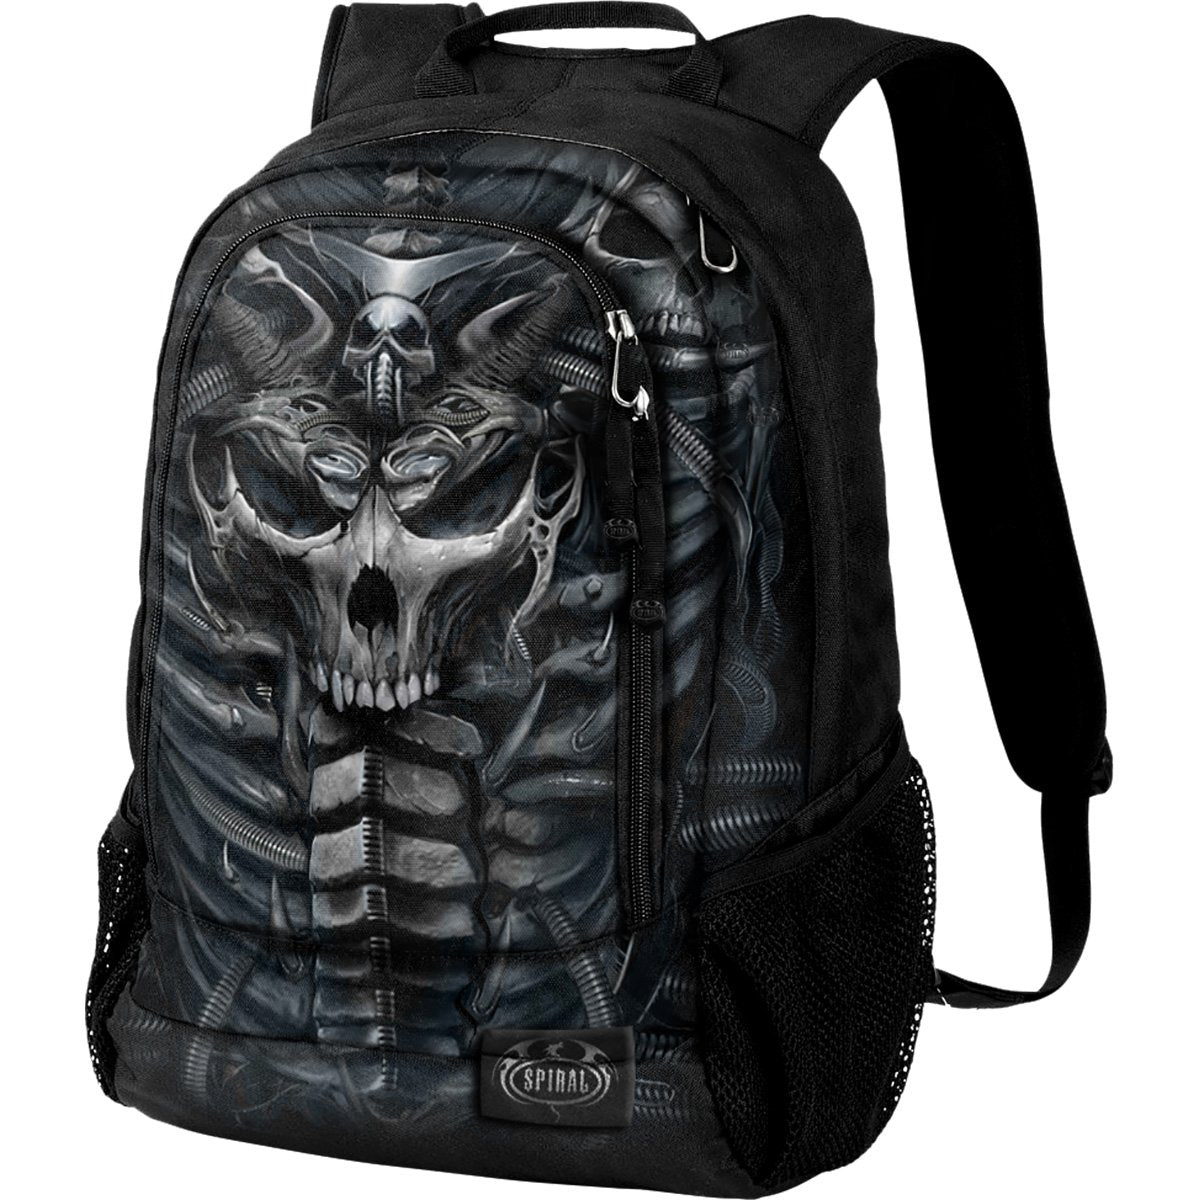 armored skull black backpack